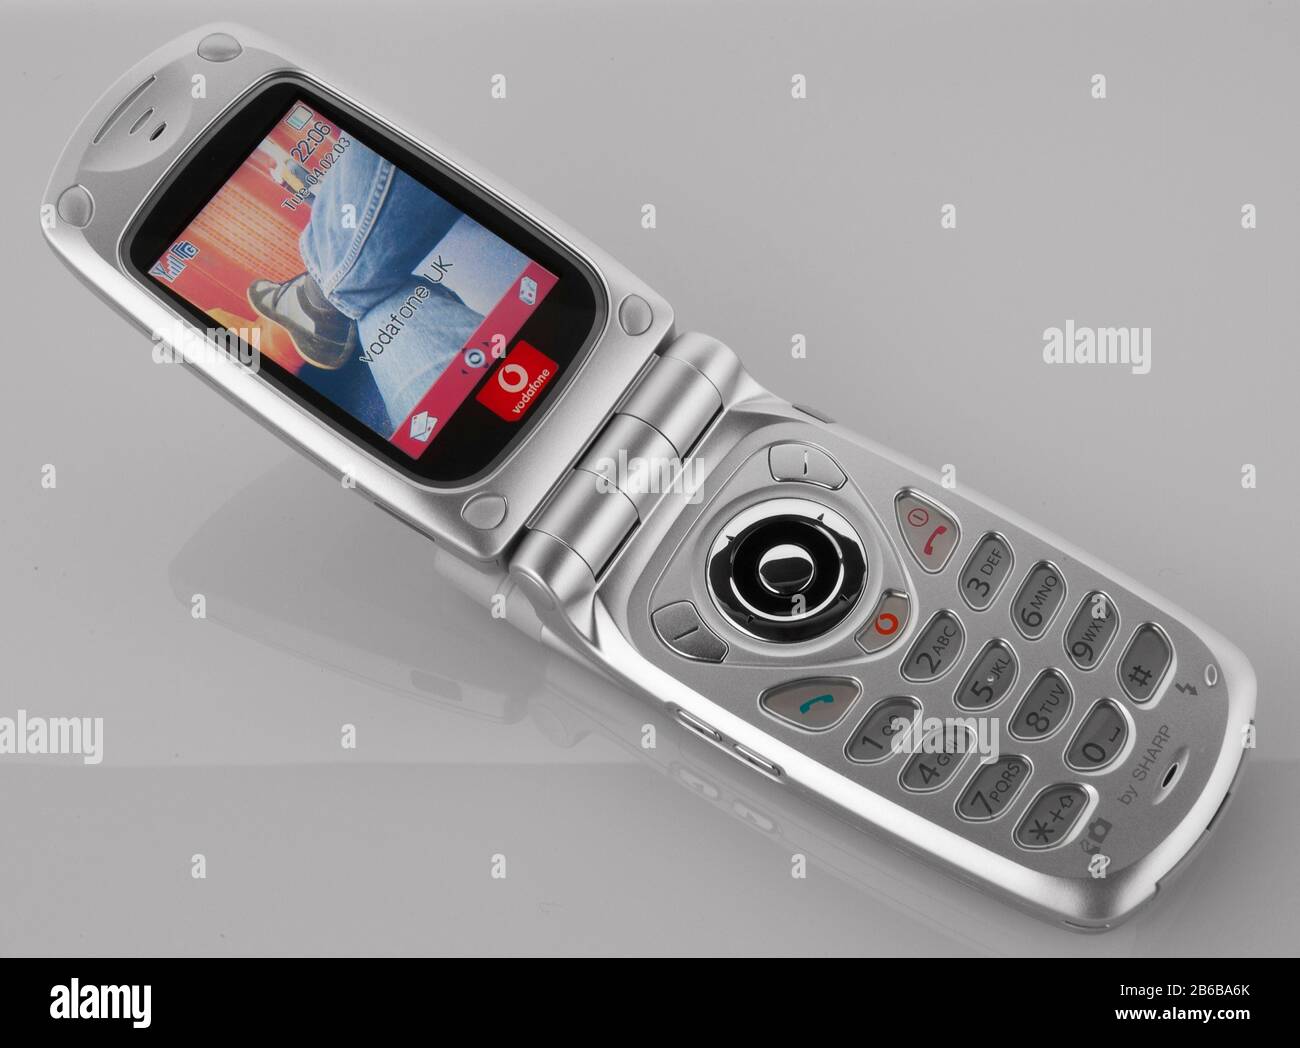 Mobiltelefon im alten Stil der 1990er Jahre. Sharp Mobiltelefonnummer mit Farbdisplay bei Vodafone. Stockfoto